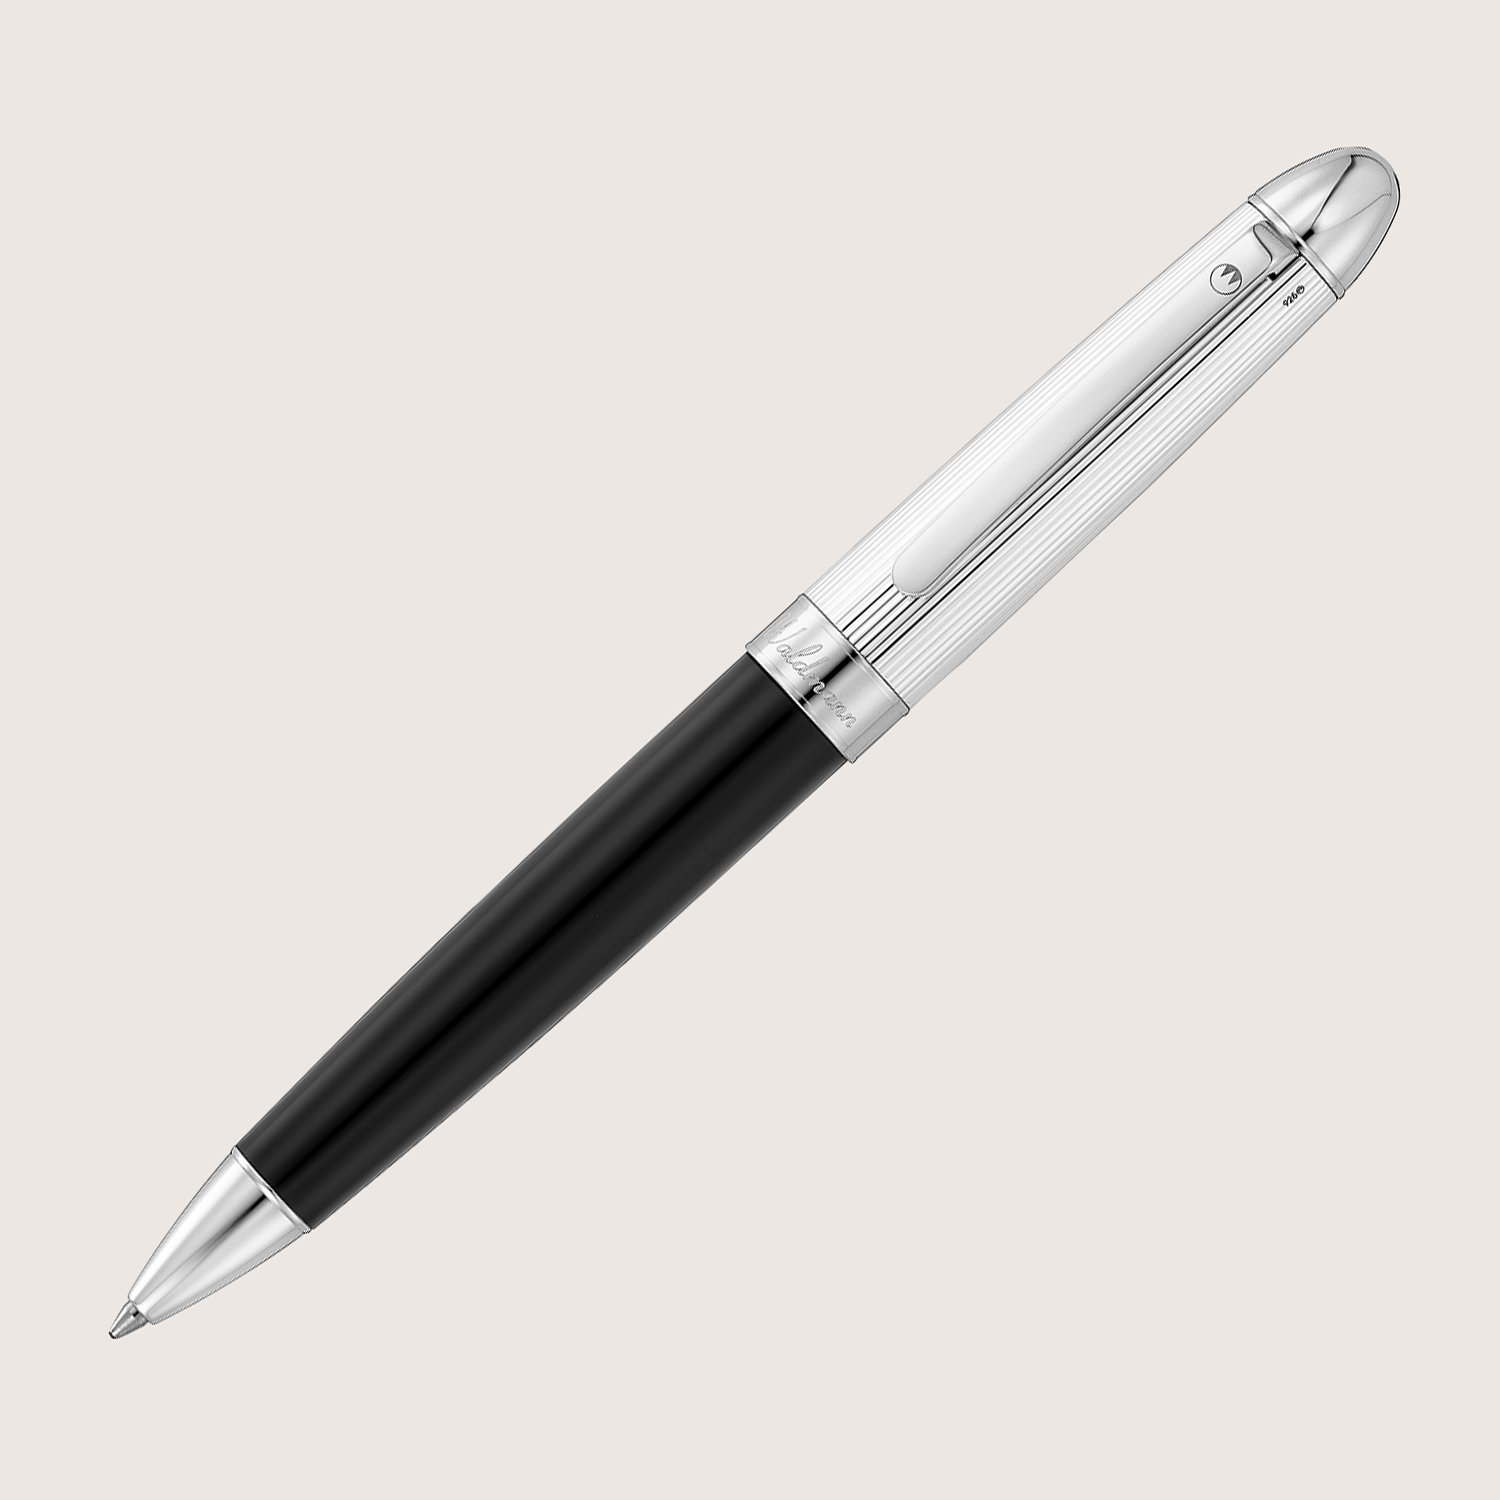 PRECIEUX Kugelschreiber Lack Schwarz Silber hochglanzpoliert mit Linien-Design